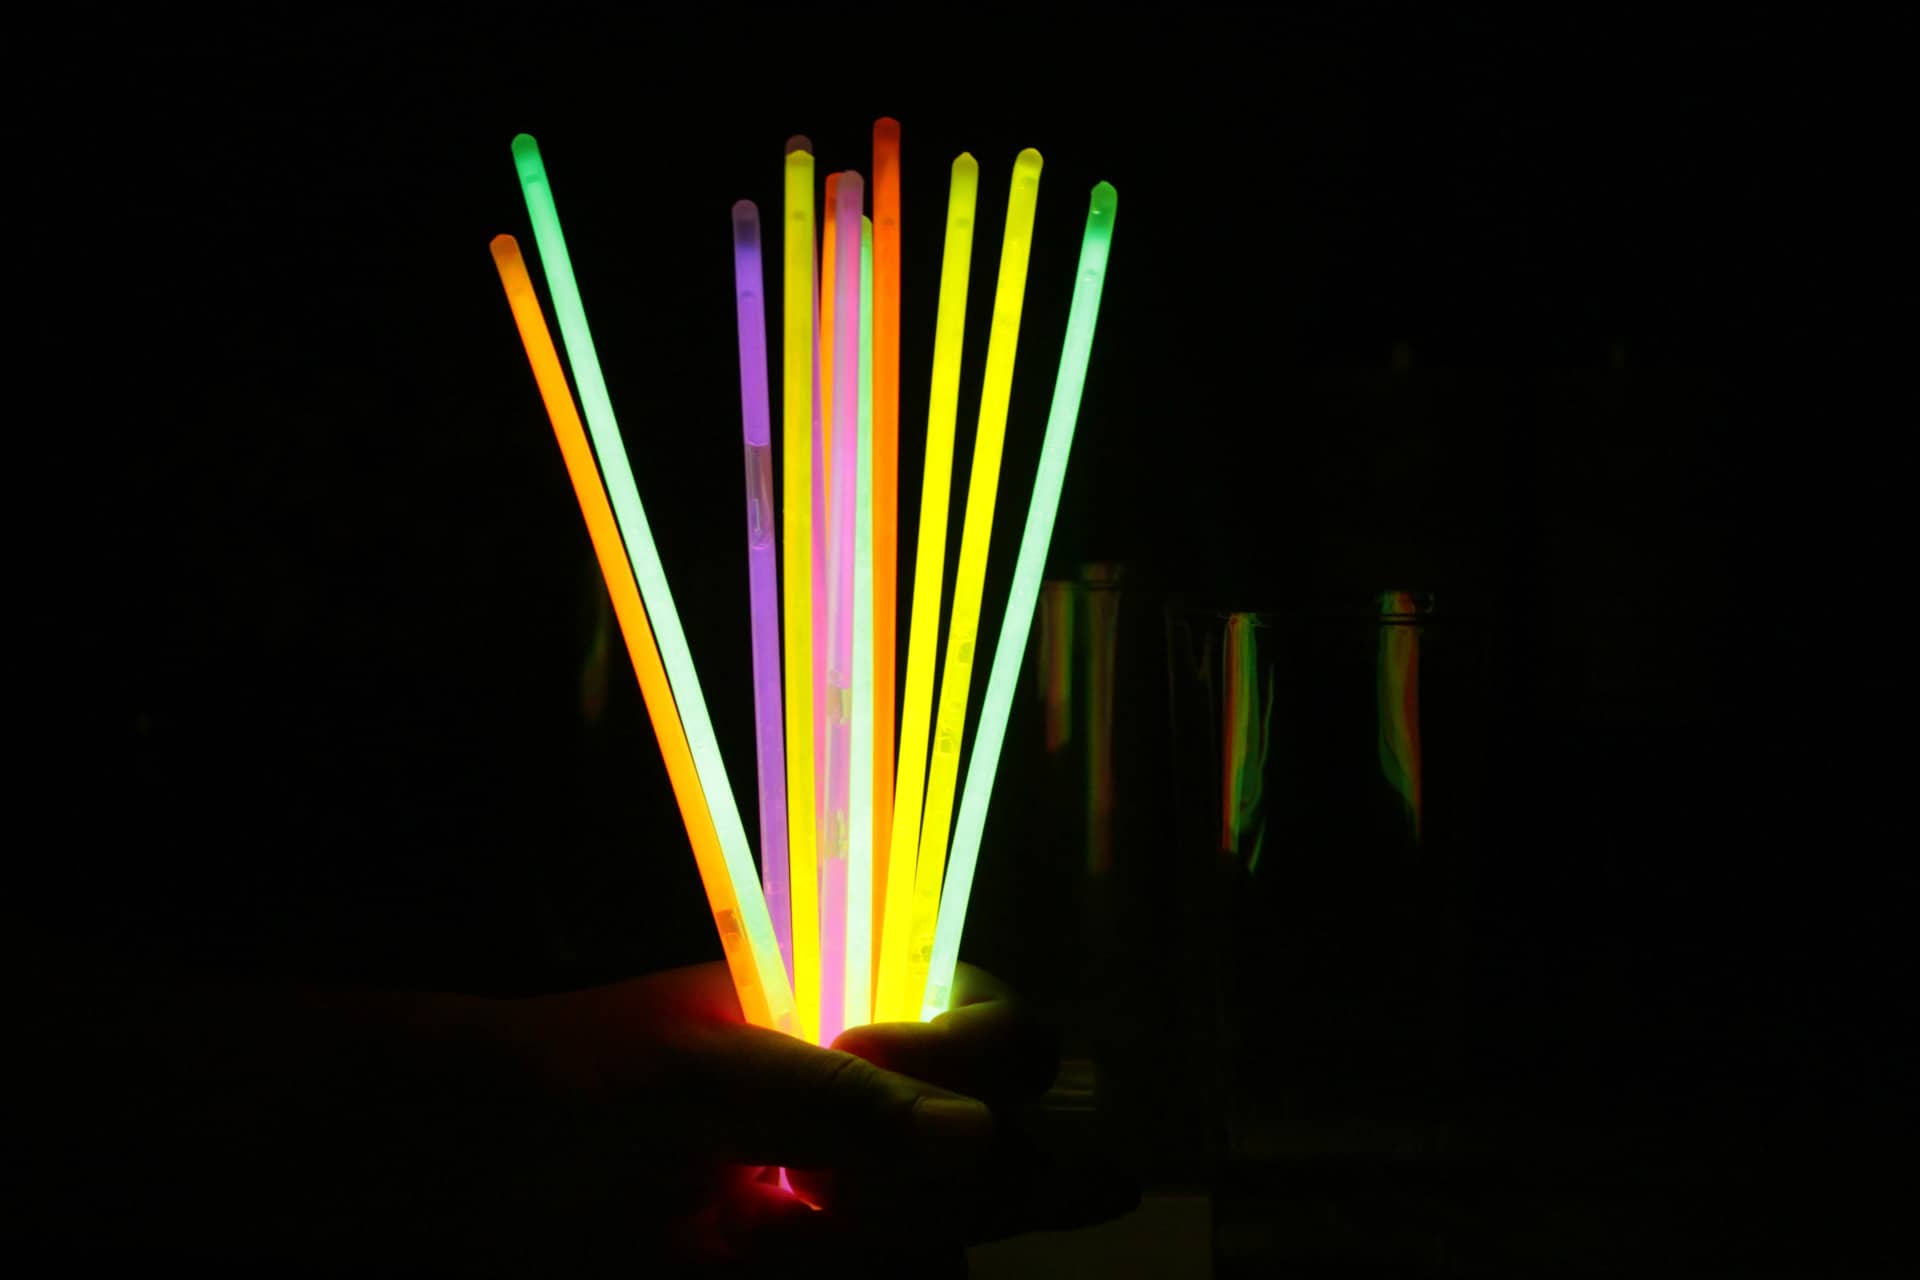 glow sticks for emergency lighting